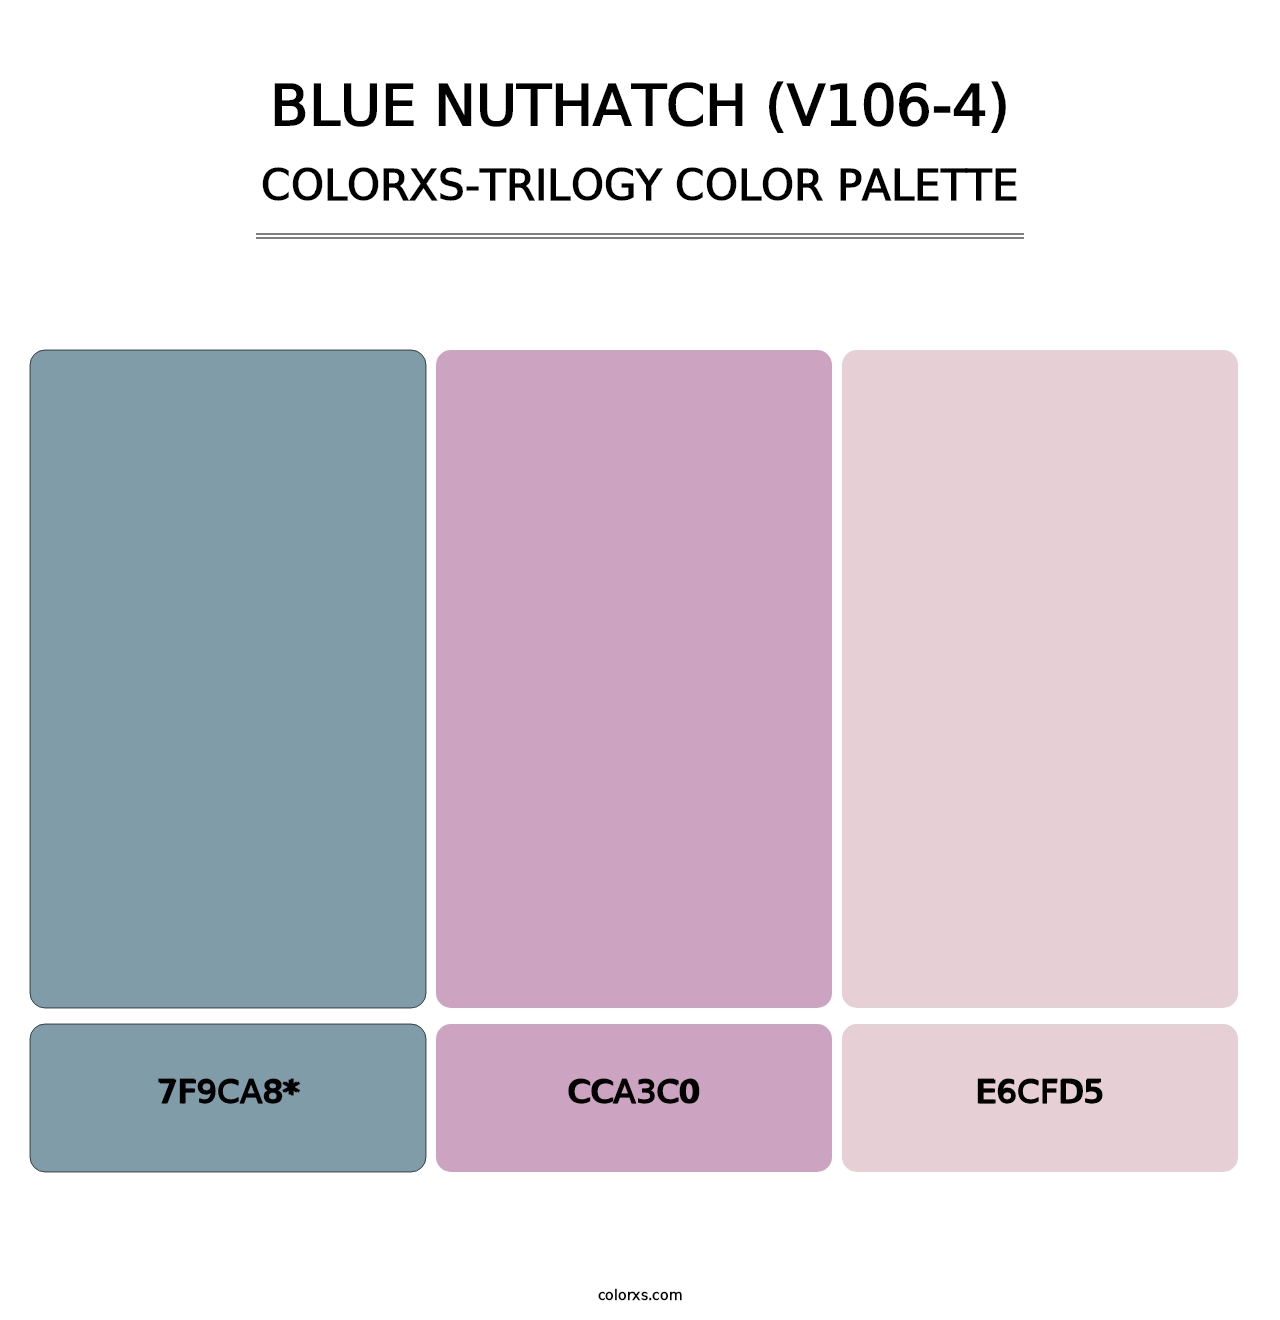 Blue Nuthatch (V106-4) - Colorxs Trilogy Palette